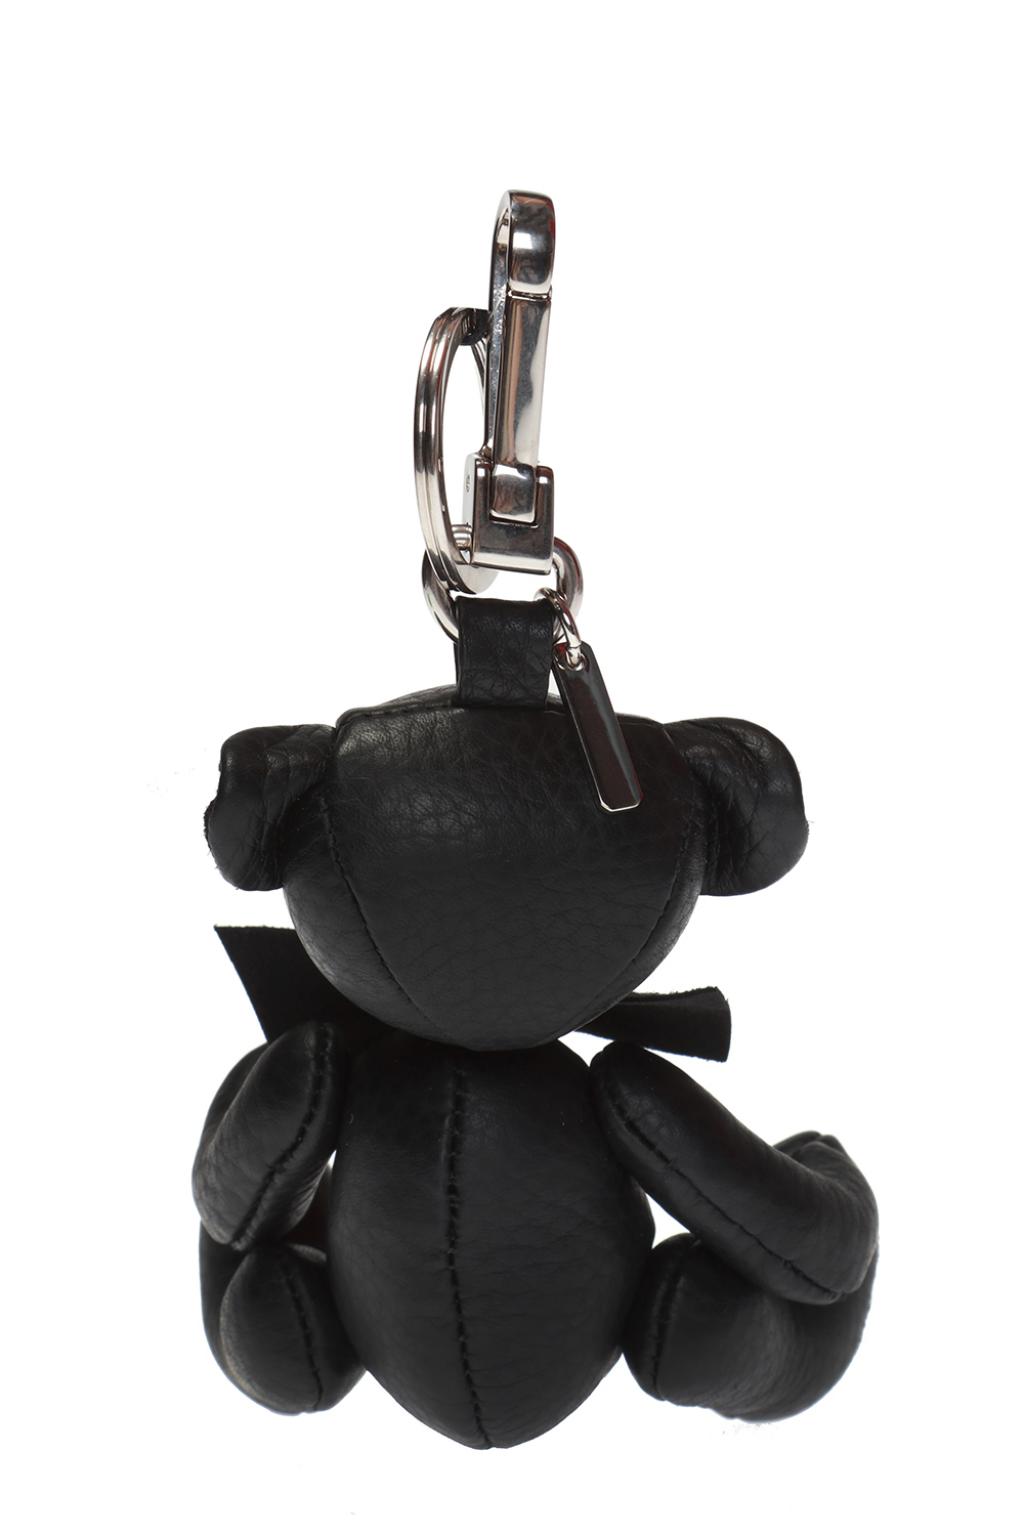 Burberry Black Keychain